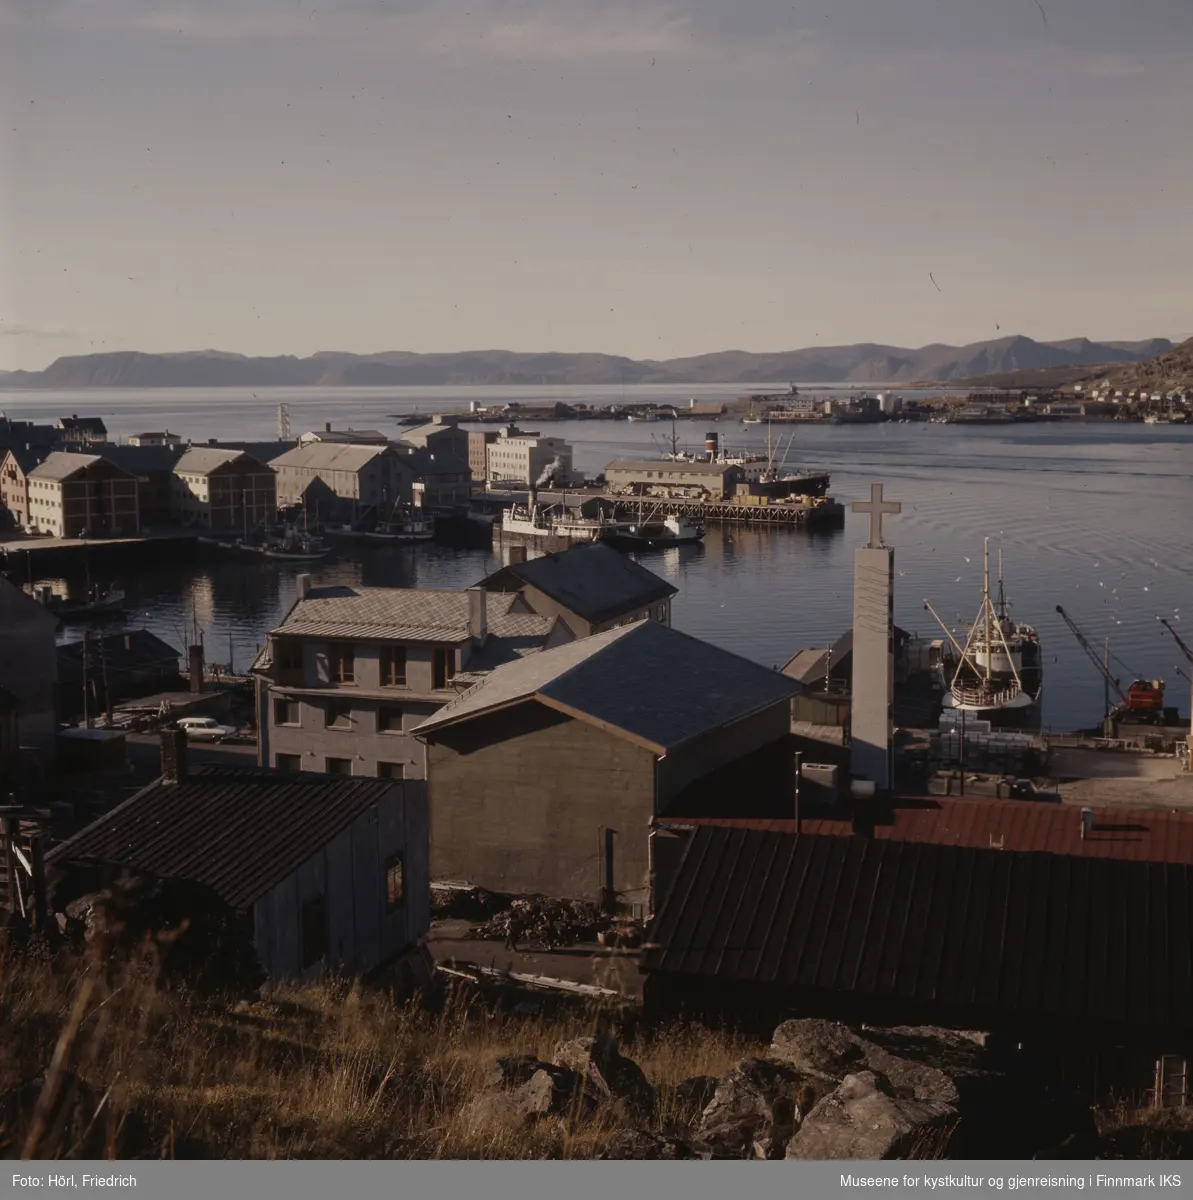 Utsikt over Hammerfest havn med deler av sentrumsbebyggelsen og båter i solskinn, fotografert fra Salen fjellet. I midten av bildet ser man den nybygde katolske kirka fra baksiden. Klokketårnet med sitt kors rager over takene. I bakgrunn ser man bydelen Fuglenes og Sørøysundet.